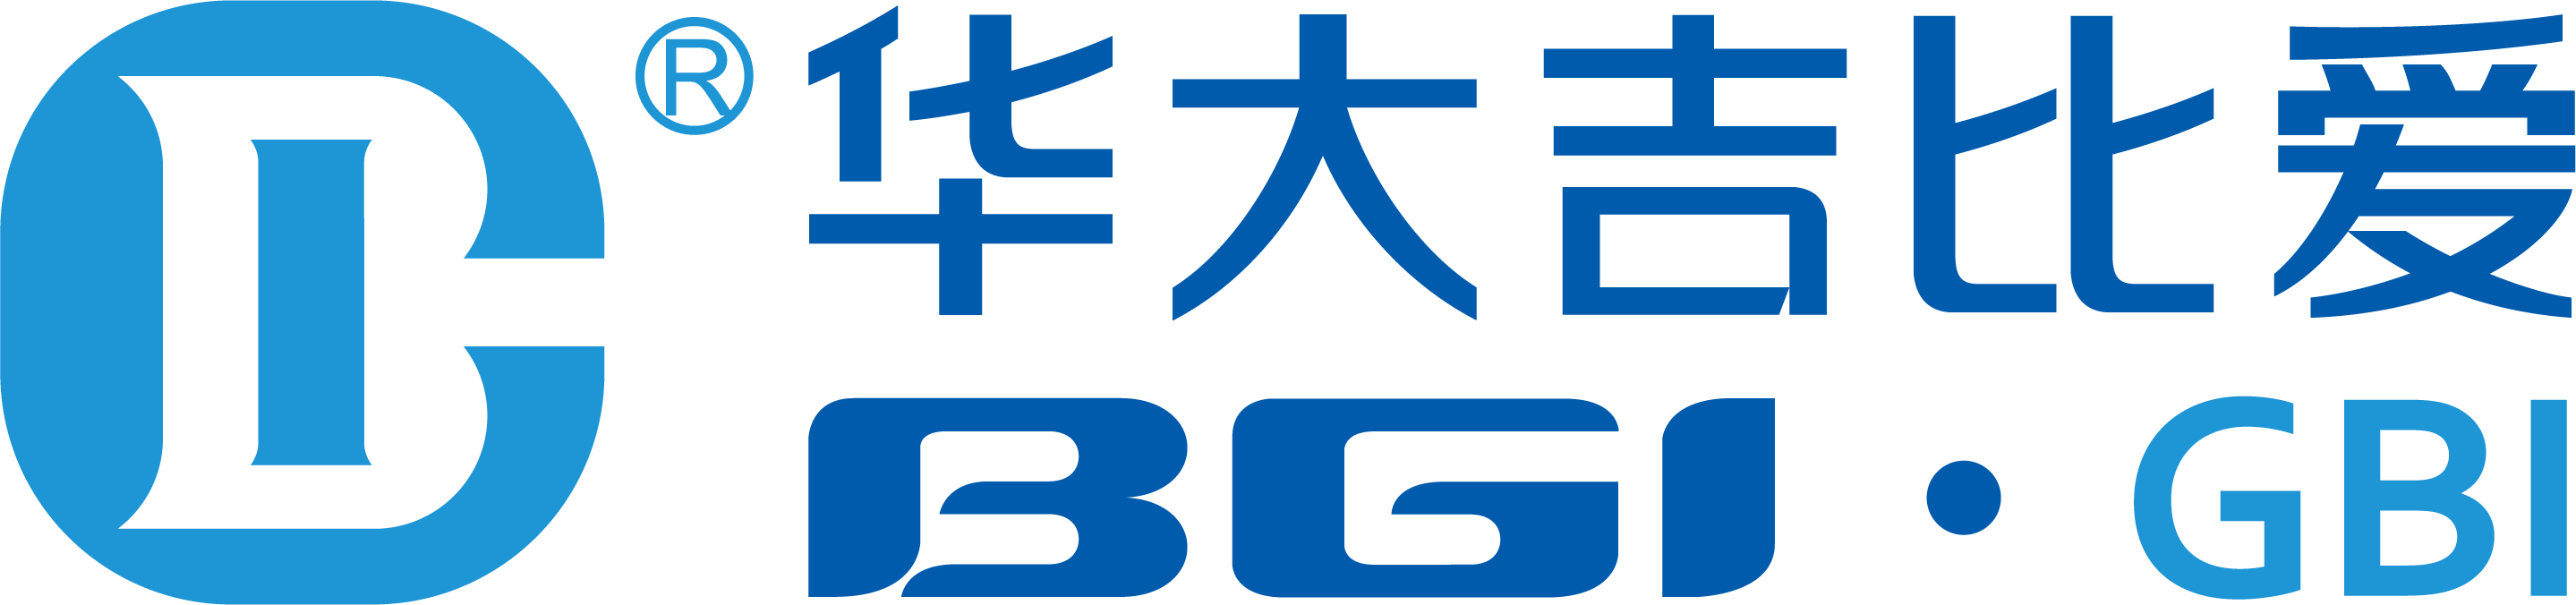 华大吉比爱完整logo2017.png